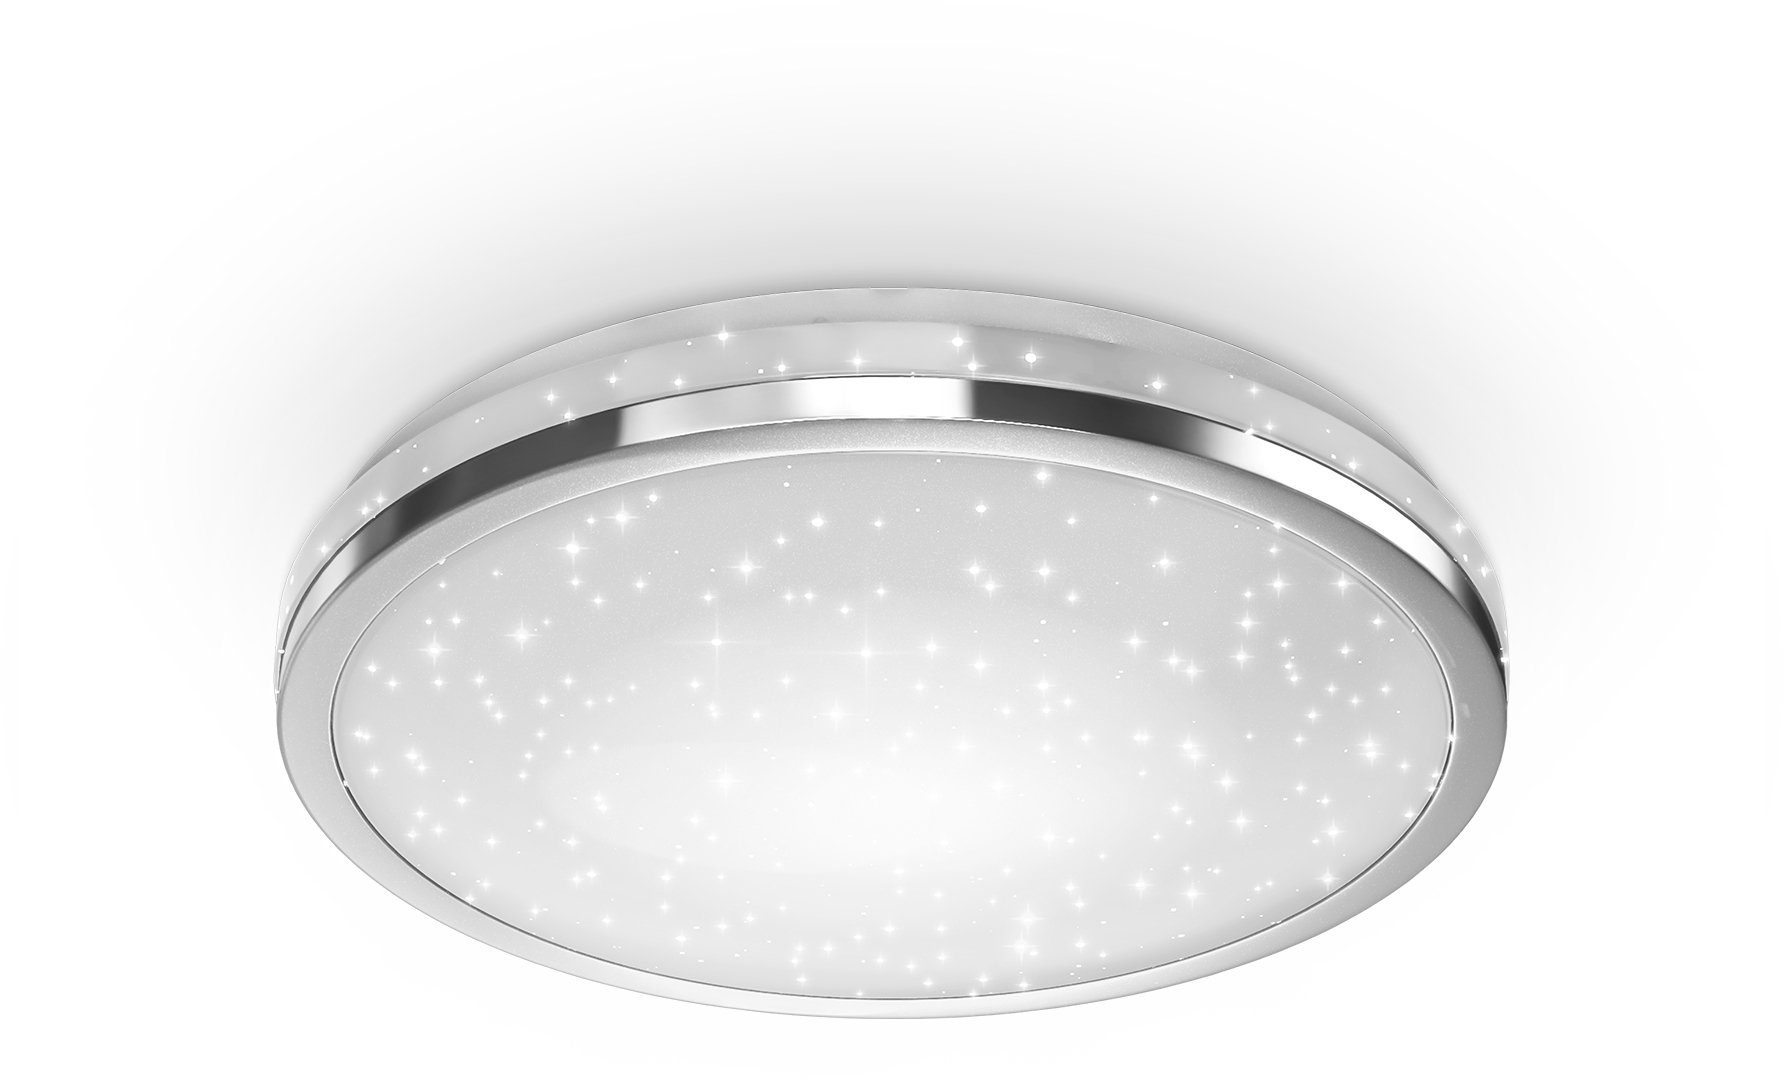 Wunderbar LED Deckenlampe Deckenleuchte, B.K.Licht integriert, neutralweiß, Neutralweiß, 10W mit fest 900lm, LED Sternendekor, LED chromfarben